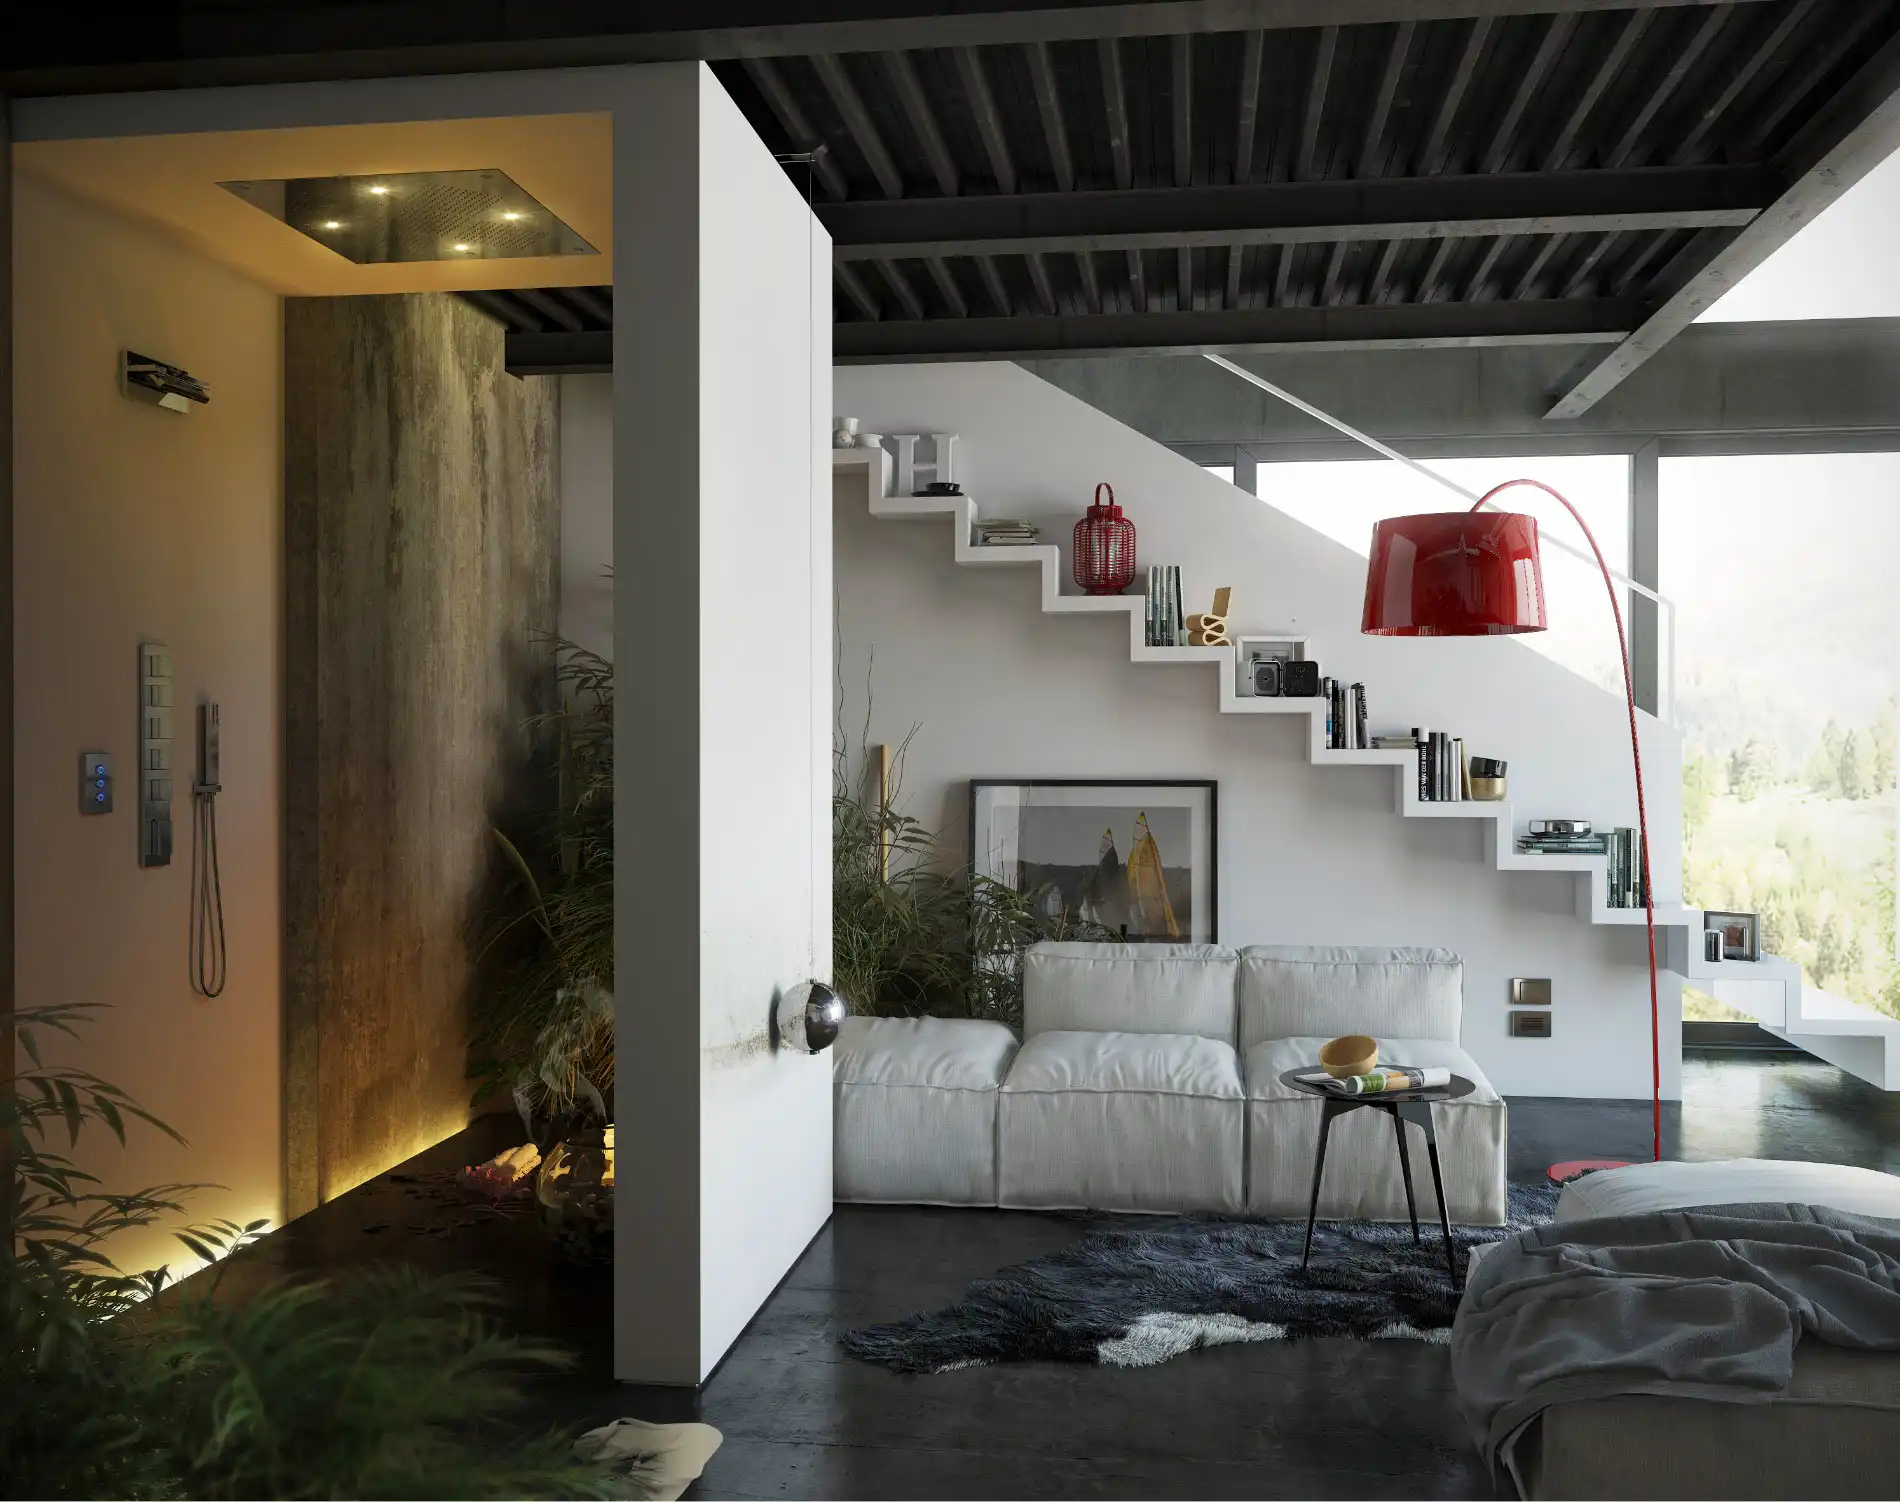 Virtual design interior Miami